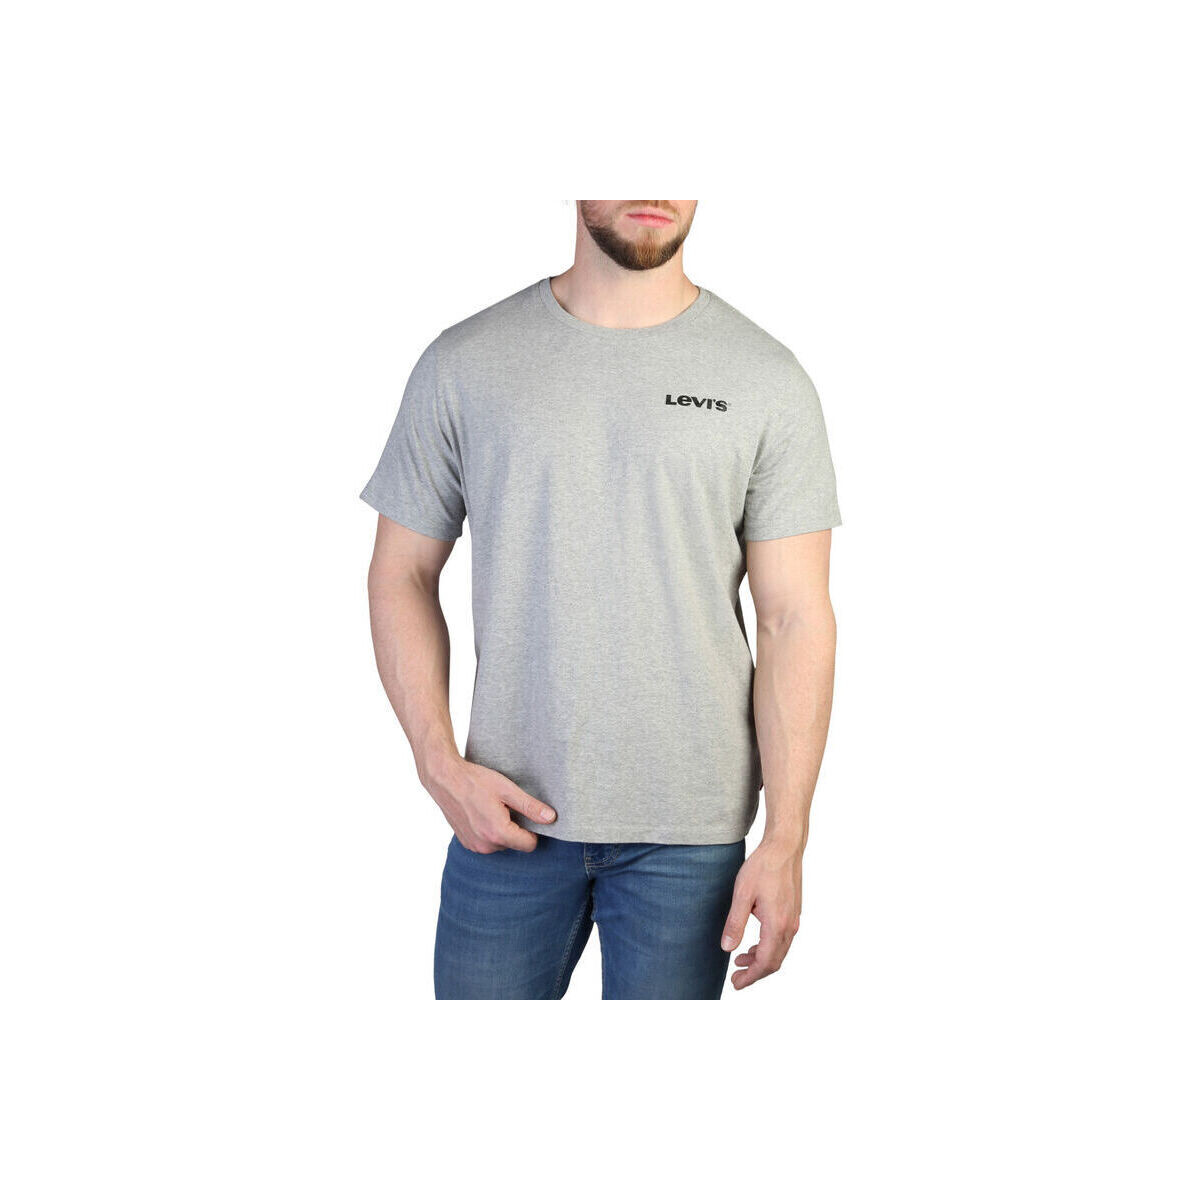 textil Herre Langærmede T-shirts Levi's - 22491 Grå